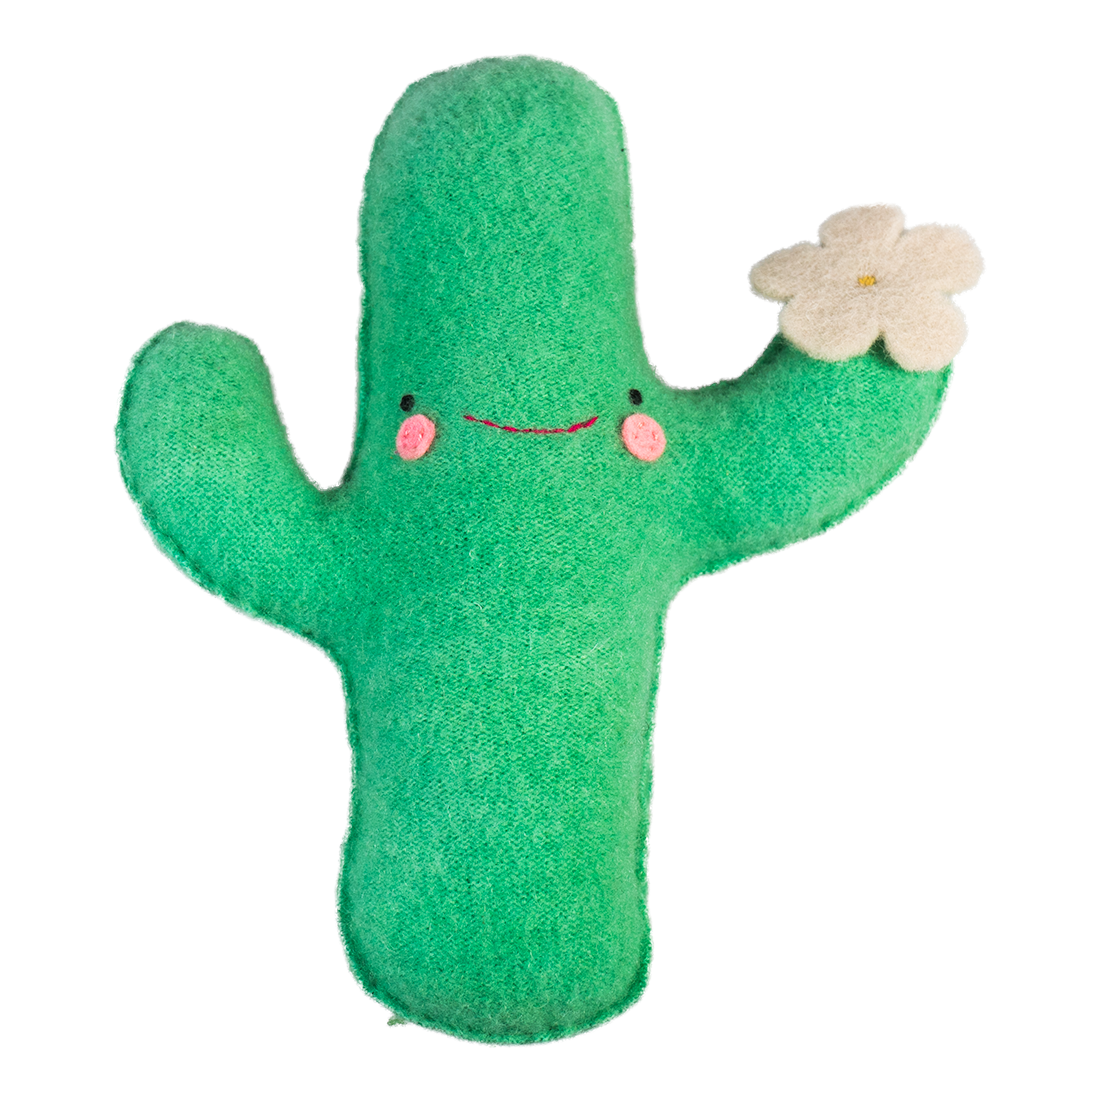 Cactus sweater plush